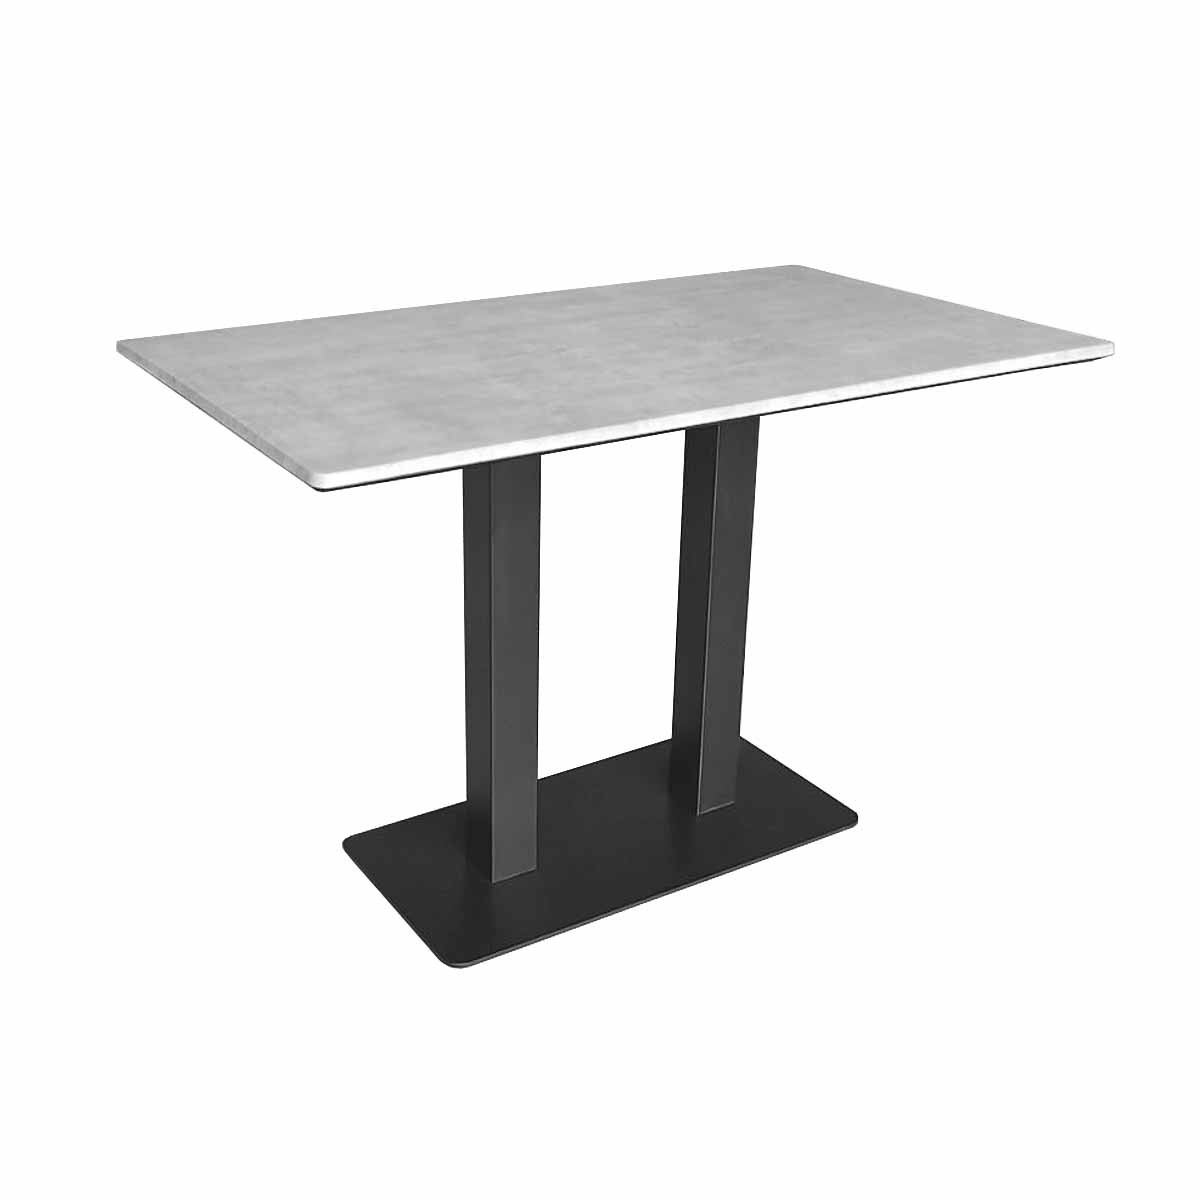 Барный стол Deco Horeca Verzalit 70x120